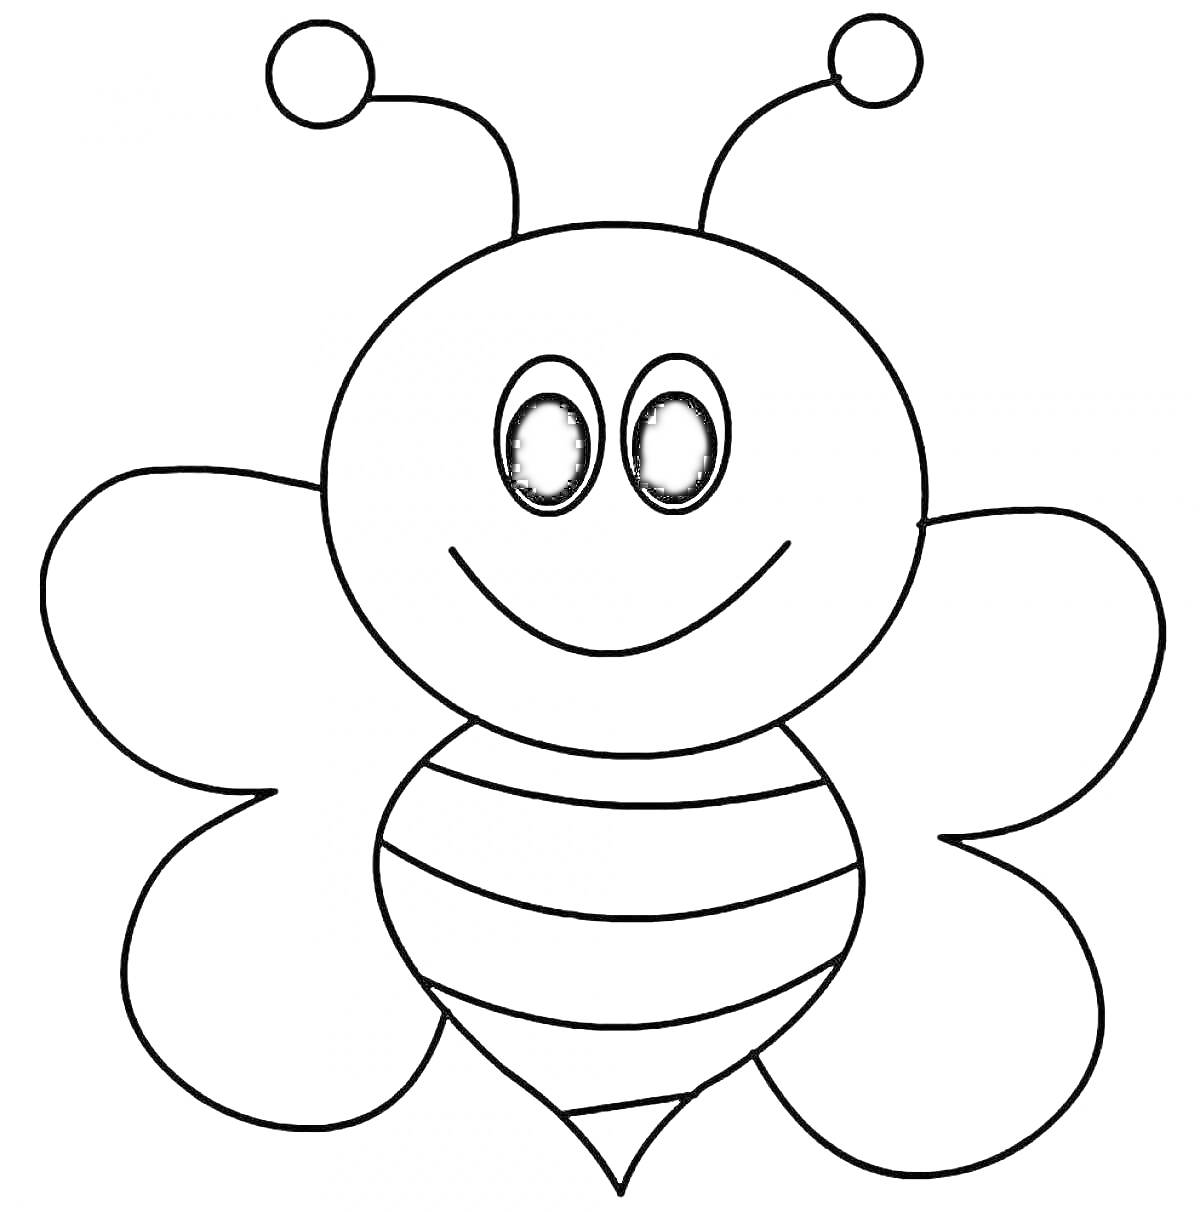 Пчелка с усиками, крыльями и полосатым телом